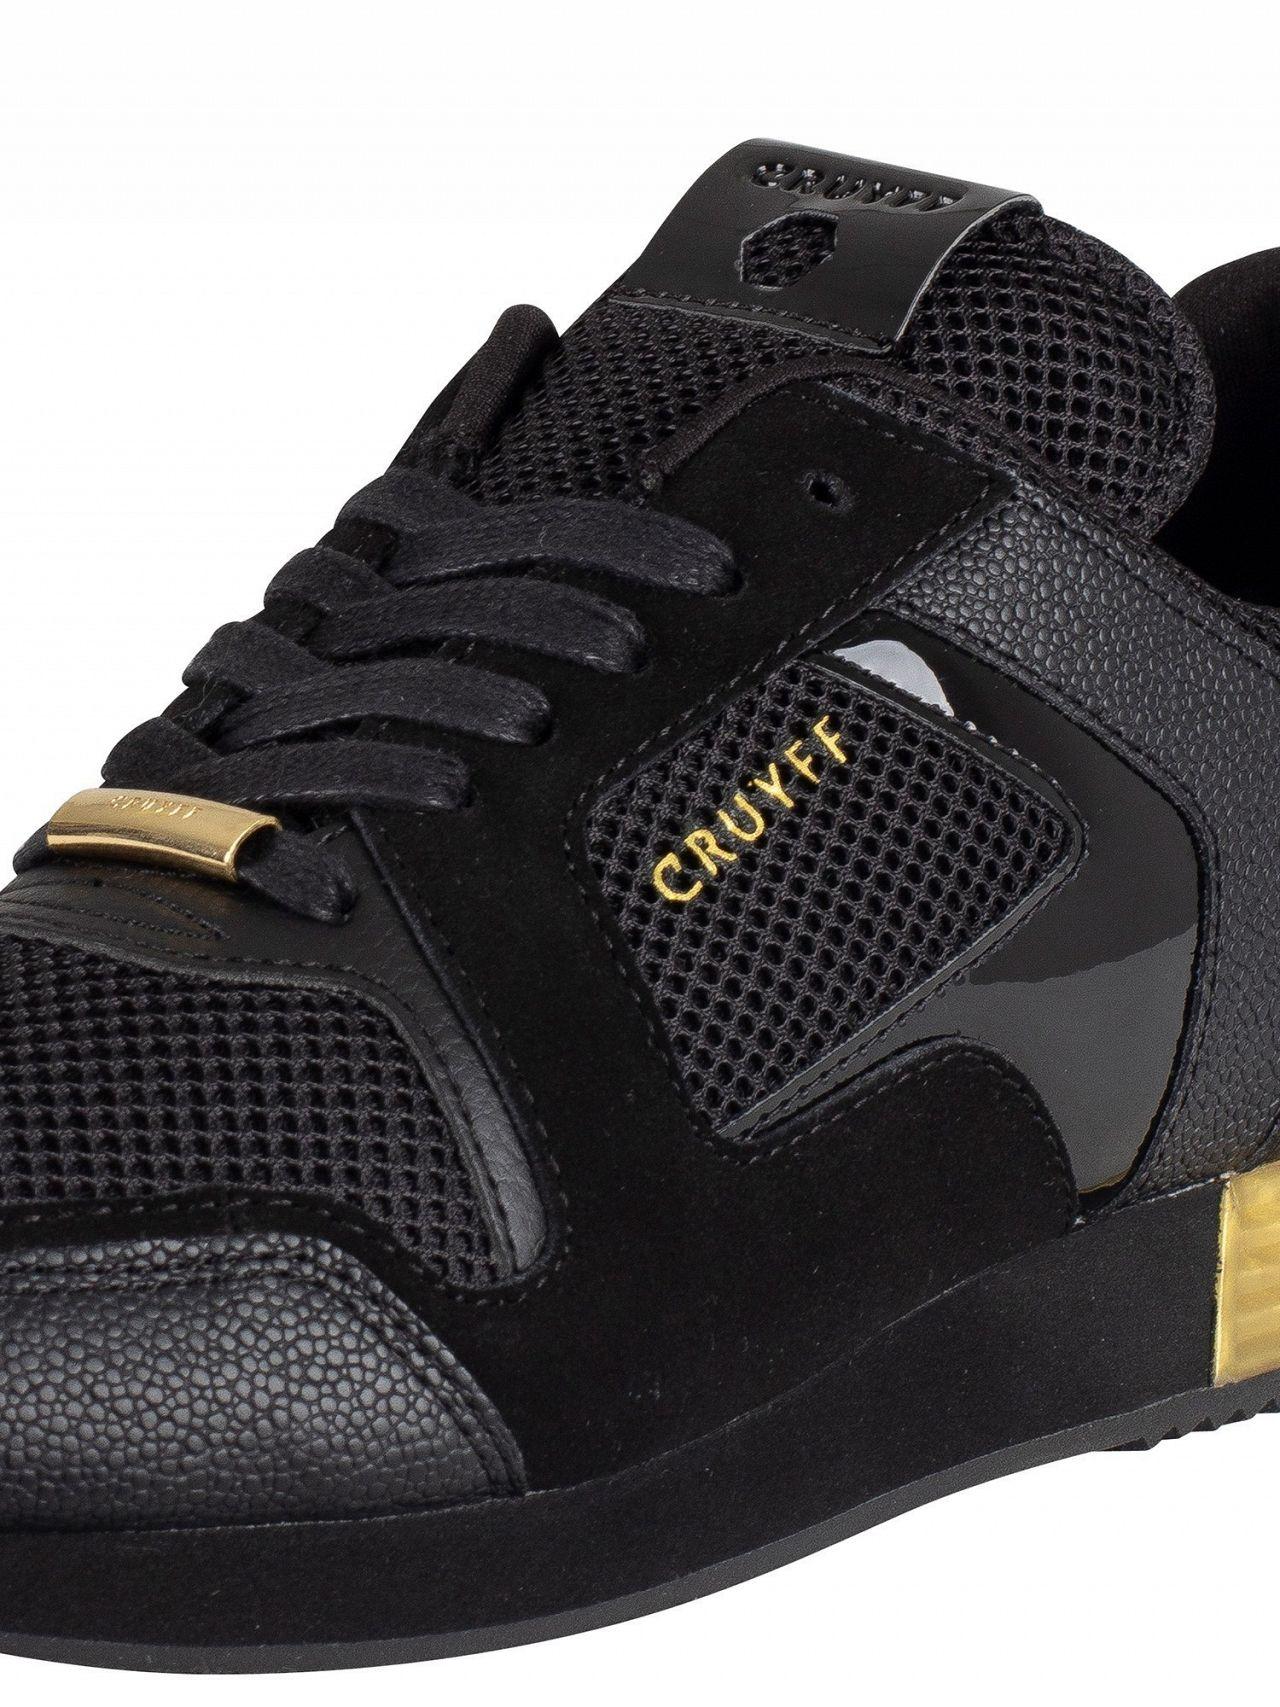 Cruyff Lusso CC6830201492 Schnürer Herren Turnschuhe Schwarz Gold Sneakers